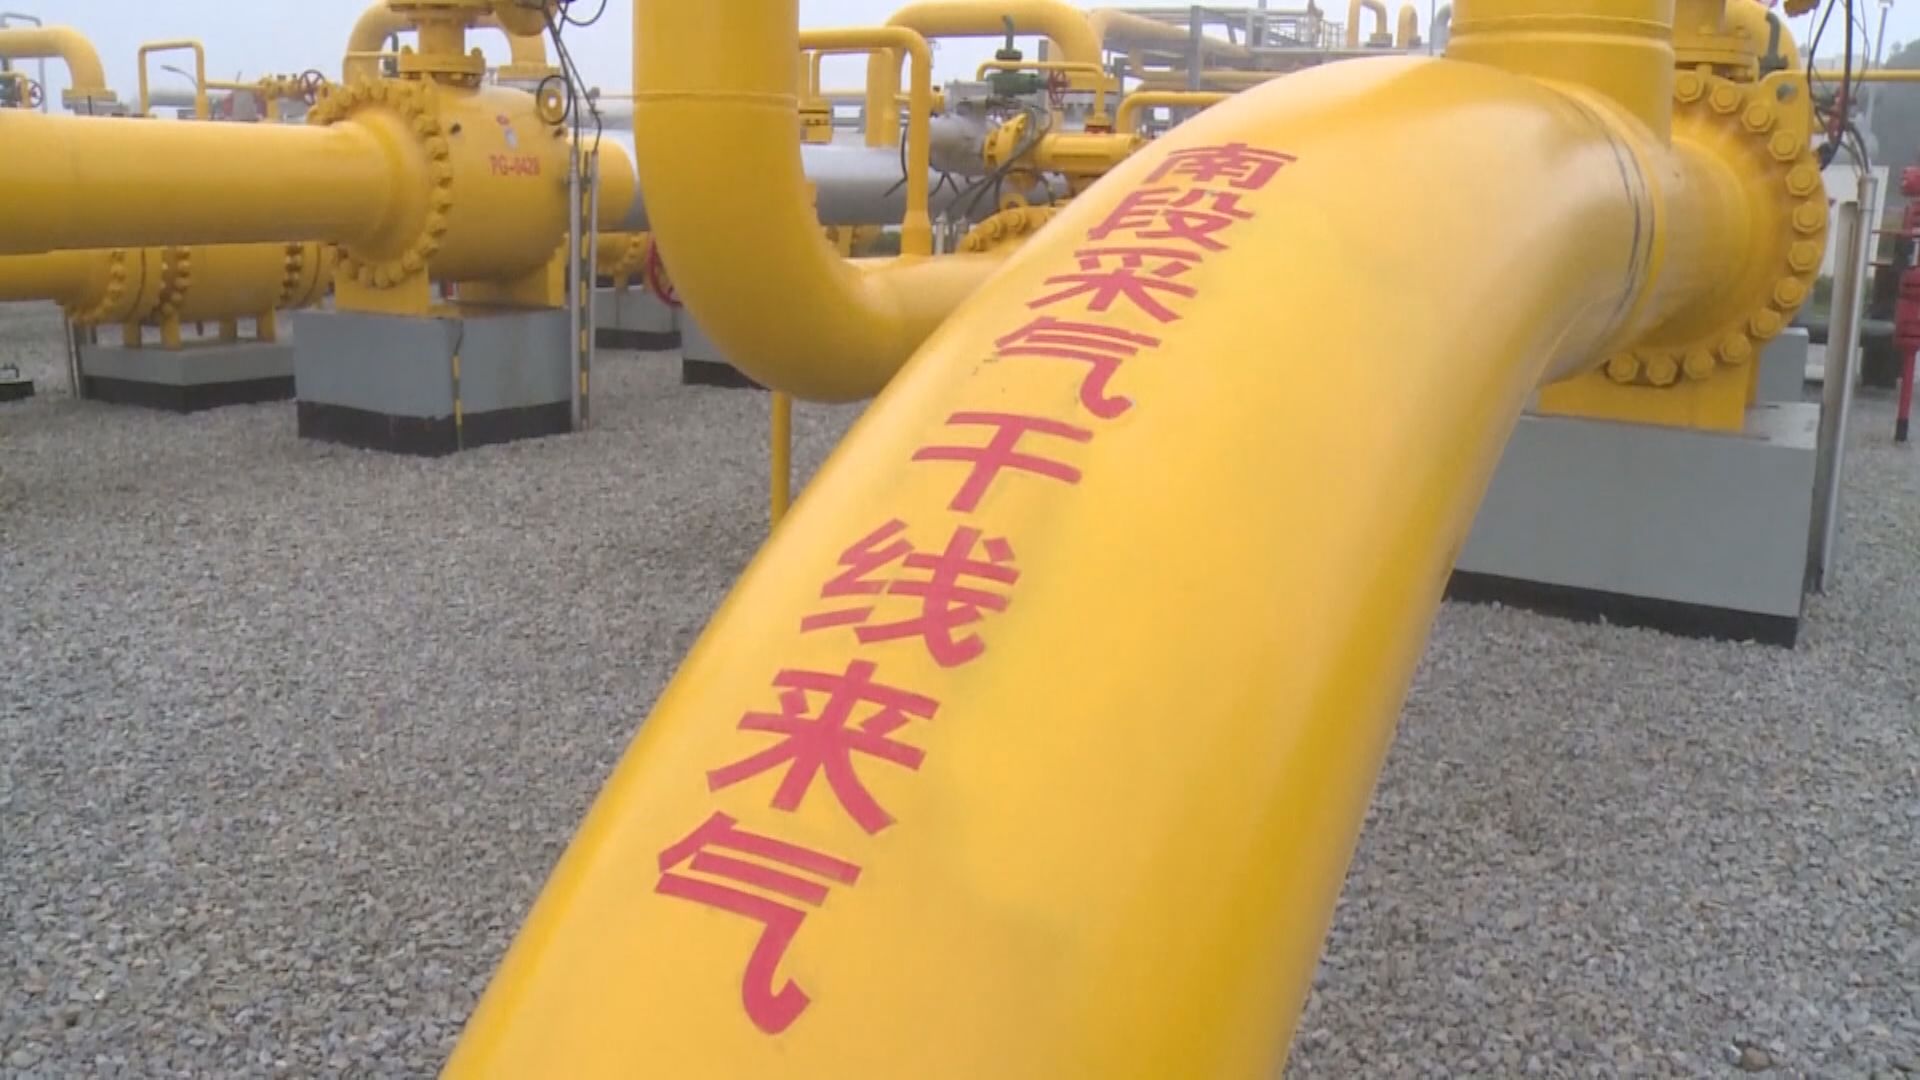 【能源短缺】彭博:內地禁LNG向外國轉售